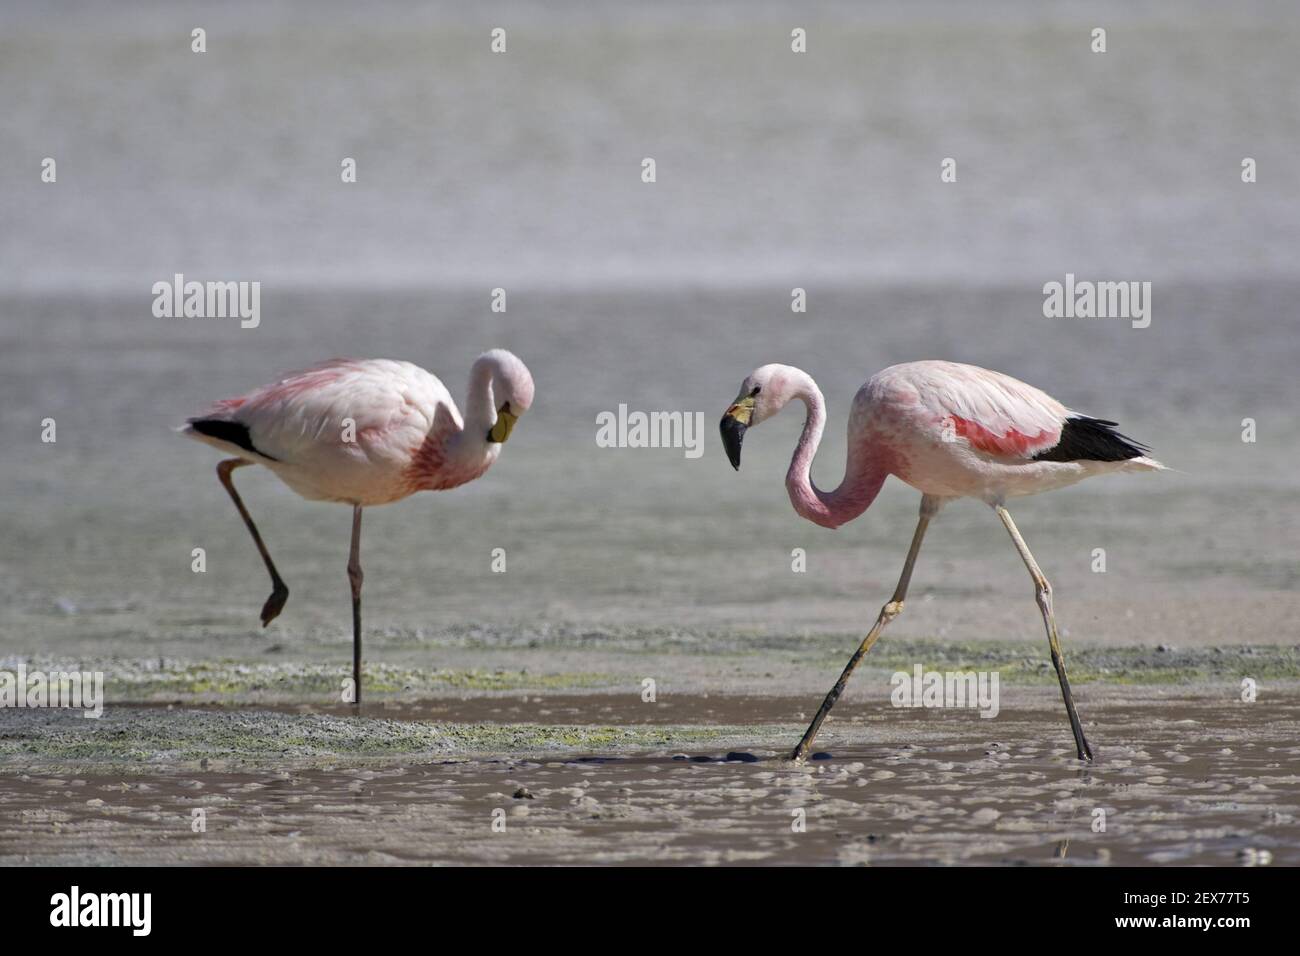 Flamants (Phoenicarrus), Bolivien, Altiplano, Suedamerika, Flamingos (Phoenicarrus), Altiplano, Bolivie, Amérique du Sud Banque D'Images